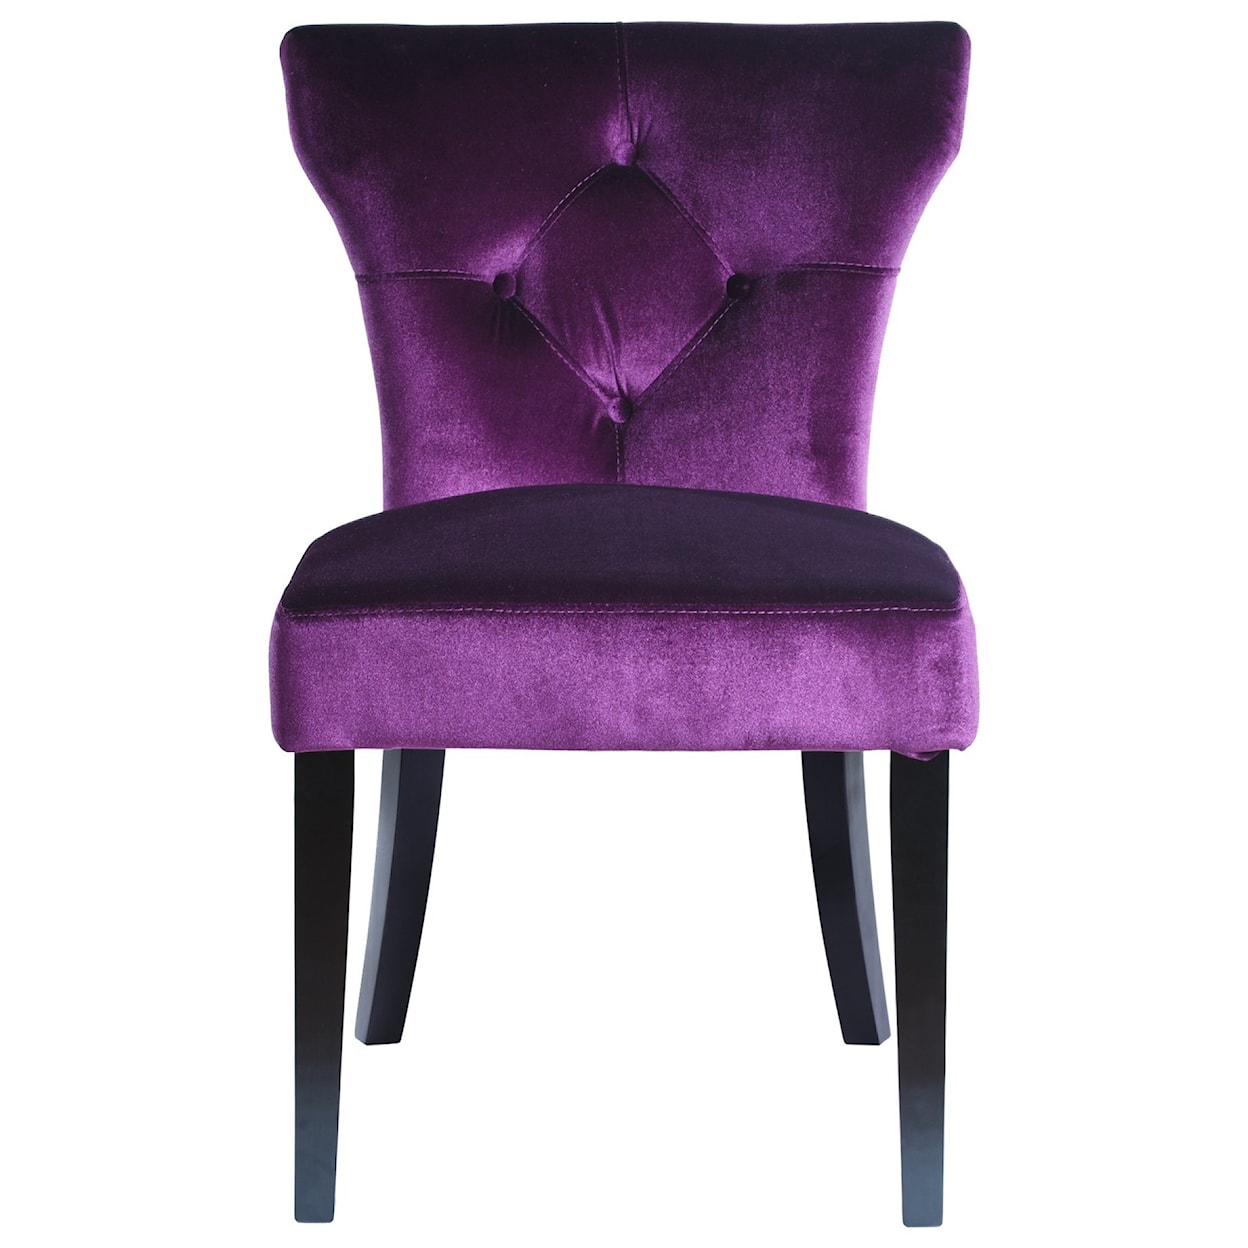 Armen Living Elise Side Chair in Purple Velvet - Set of 2